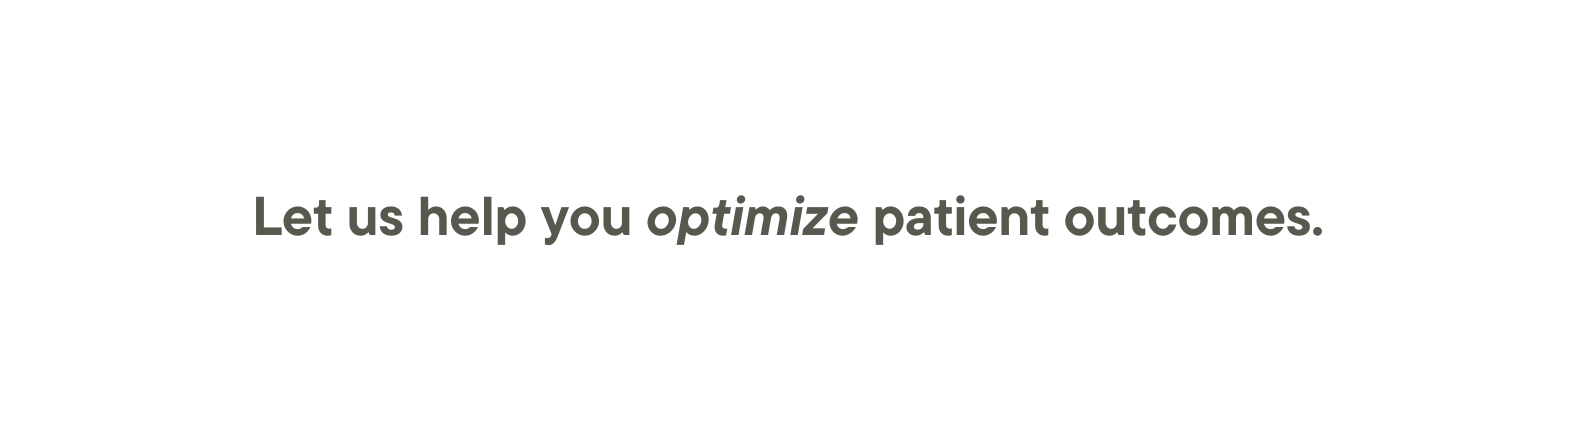 Let us help you optimize patient outcomes